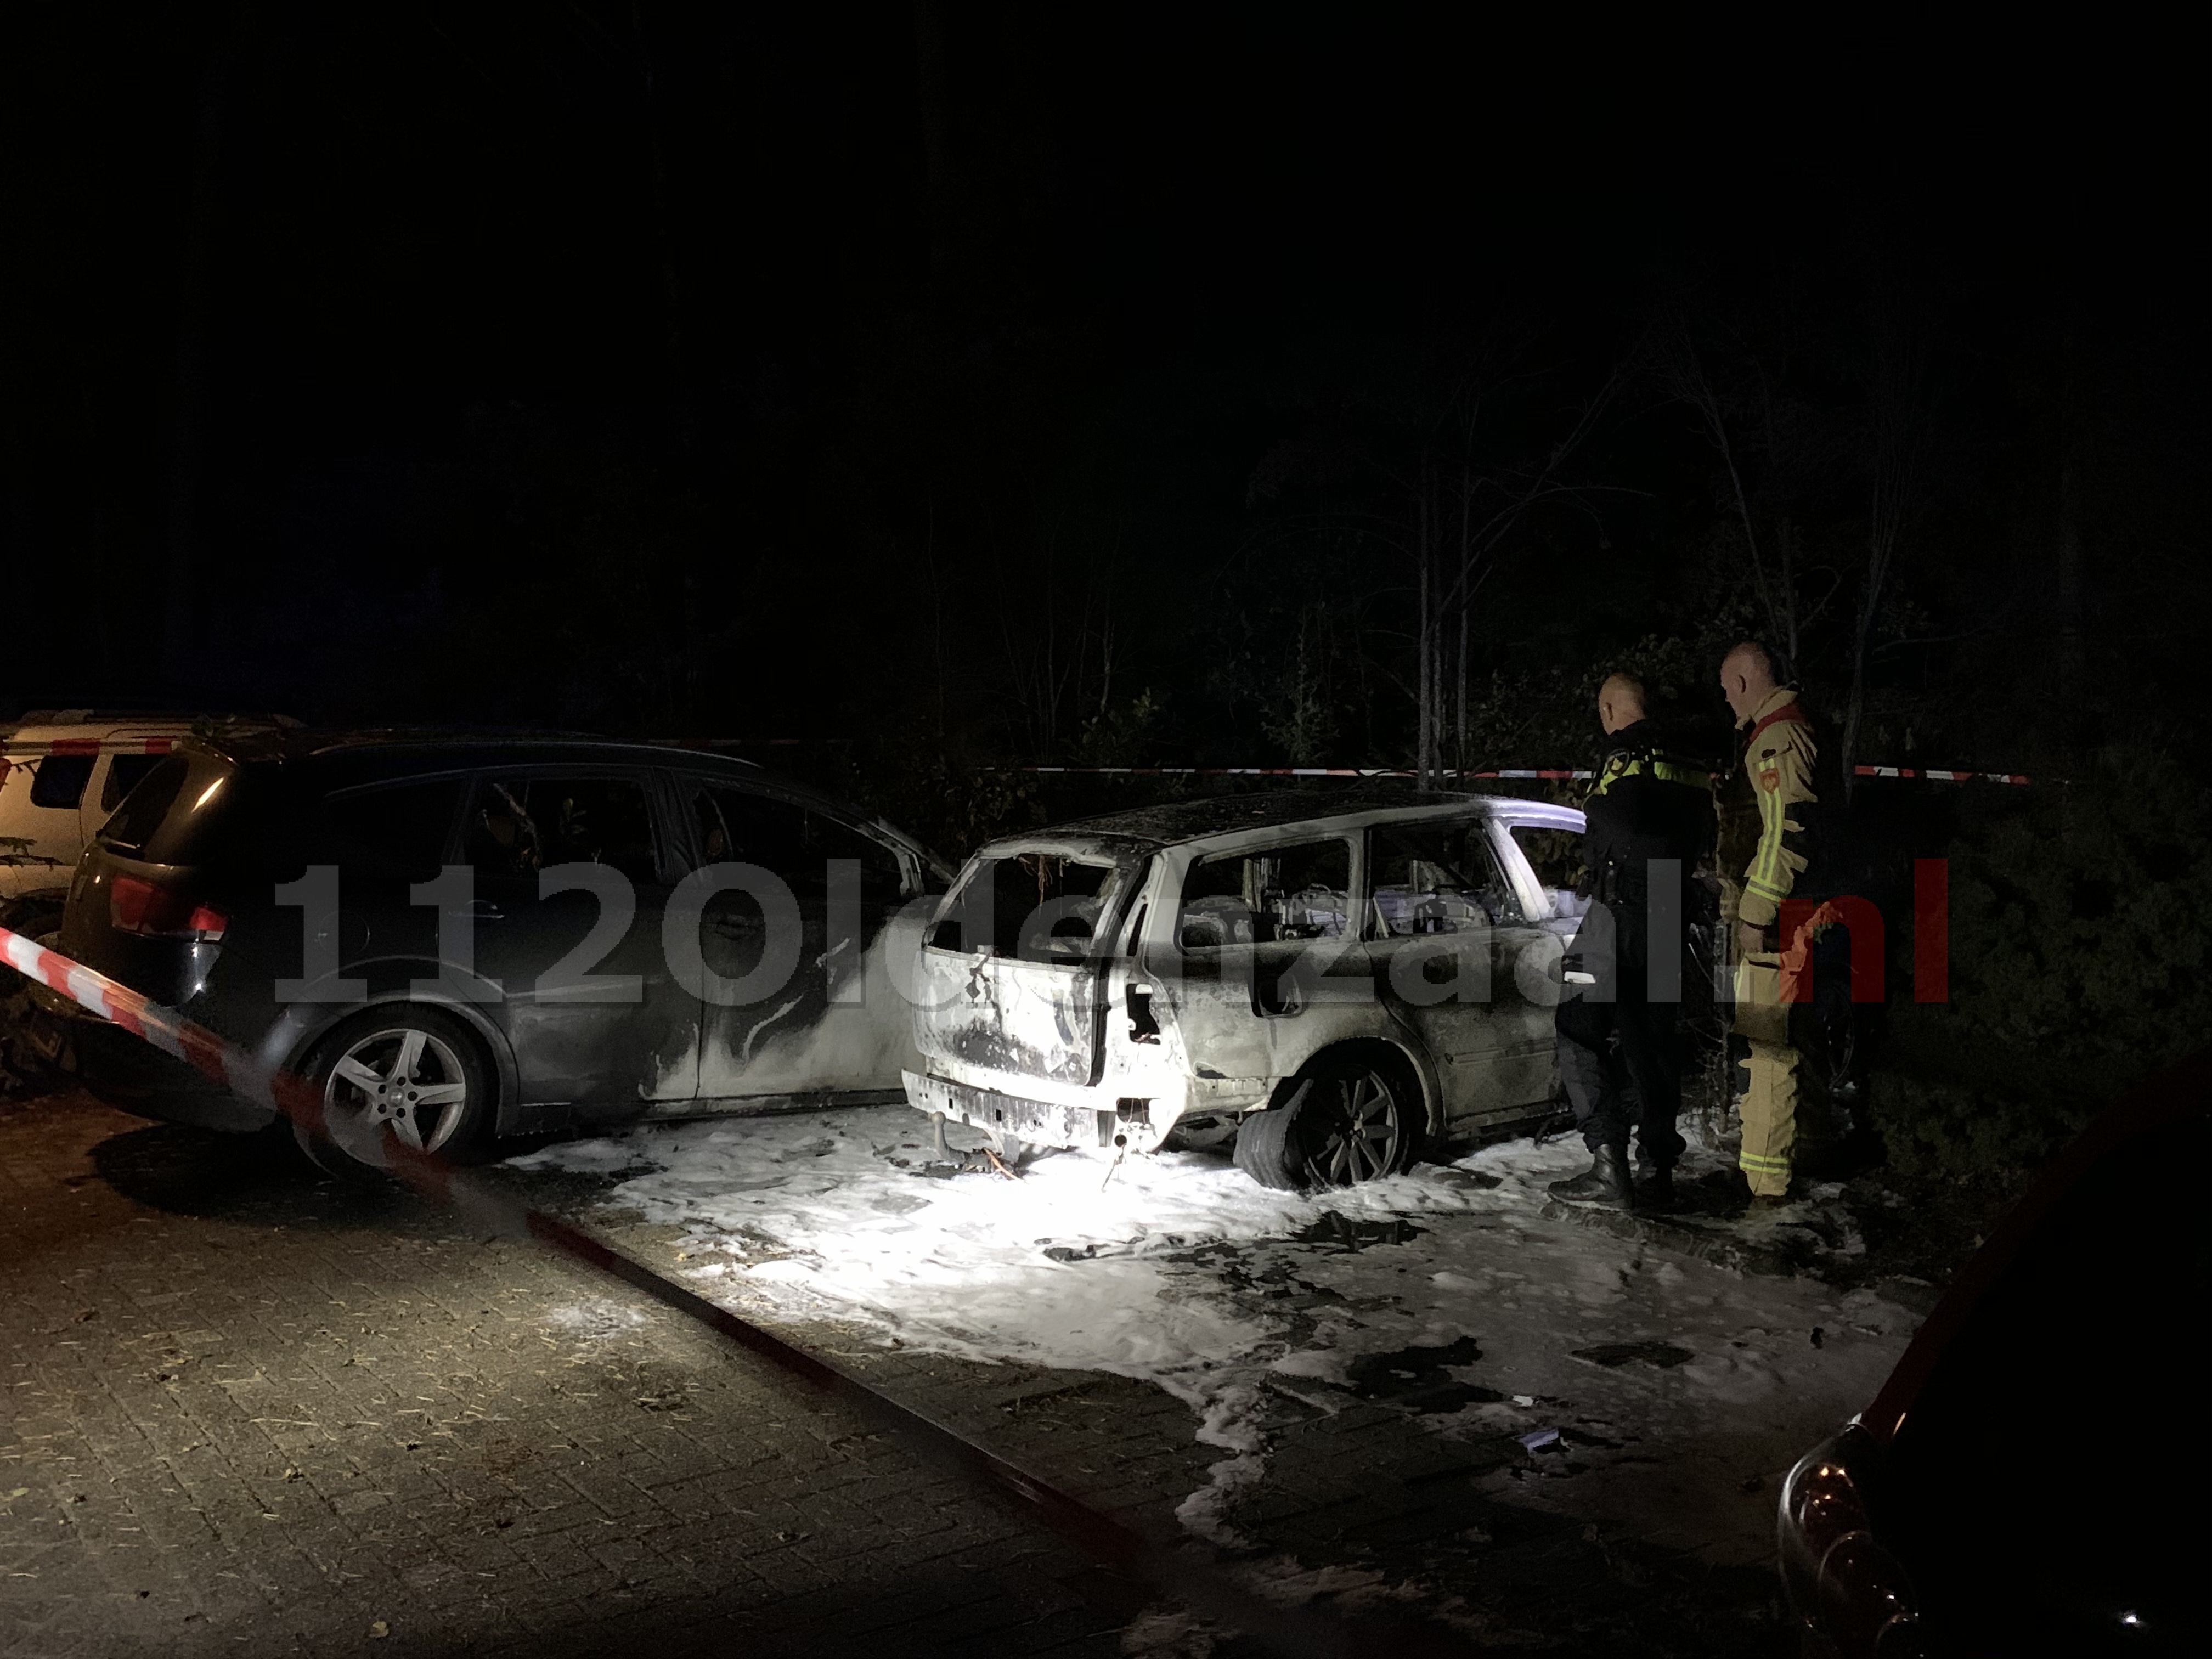 FOTO’S: Twee auto’s verwoest na brand op parkeerplaats Eureka; politie doet onderzoek